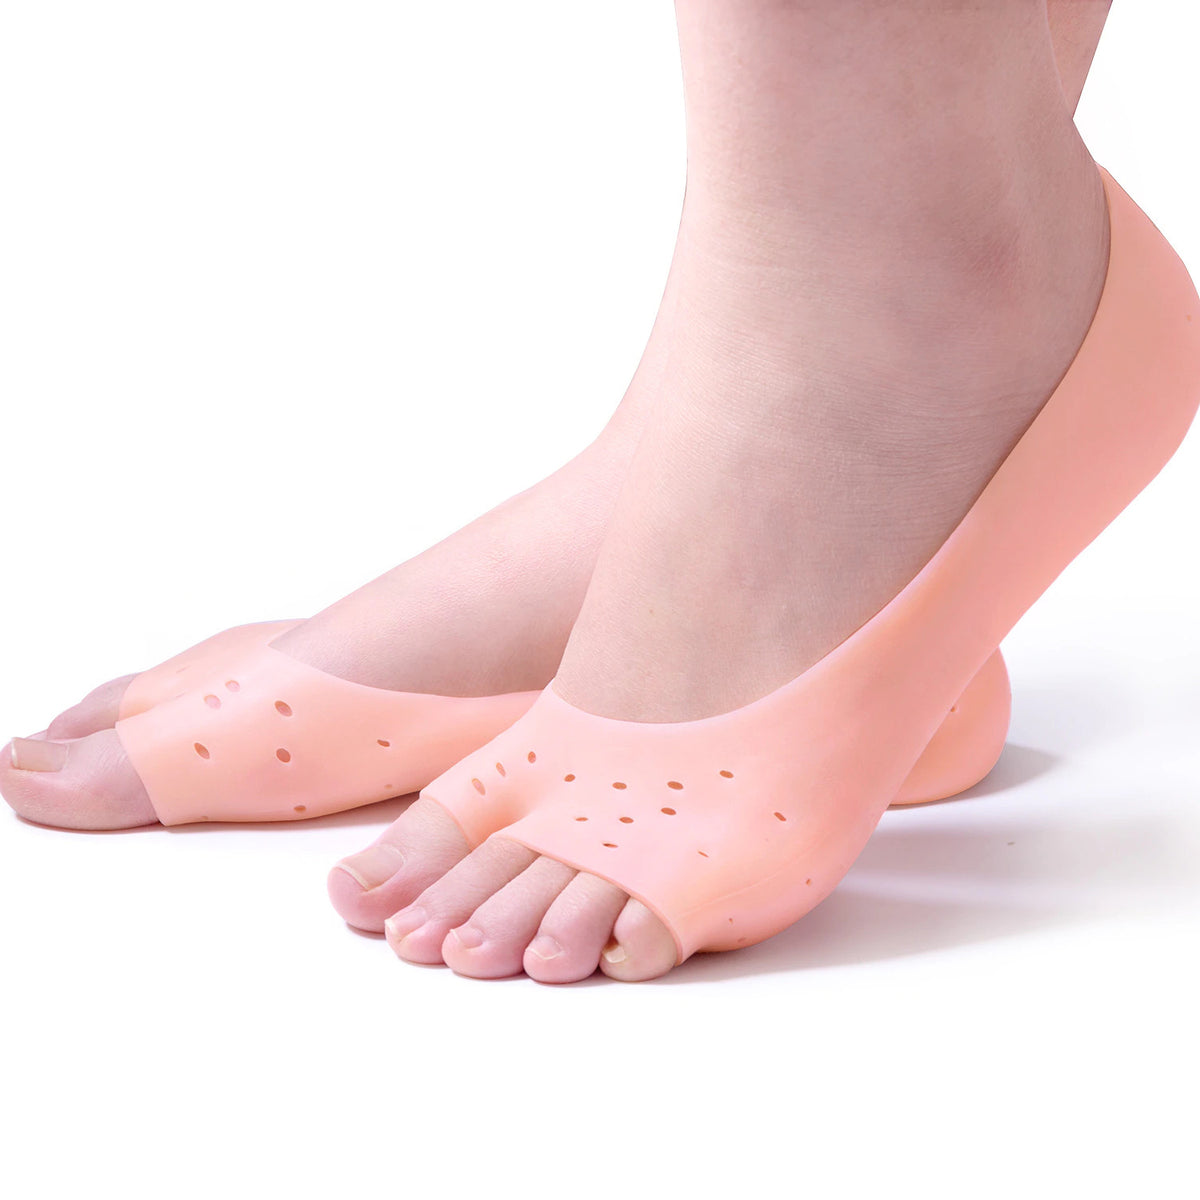 Moisturizing Gel Socks For Dry Cracked Feet